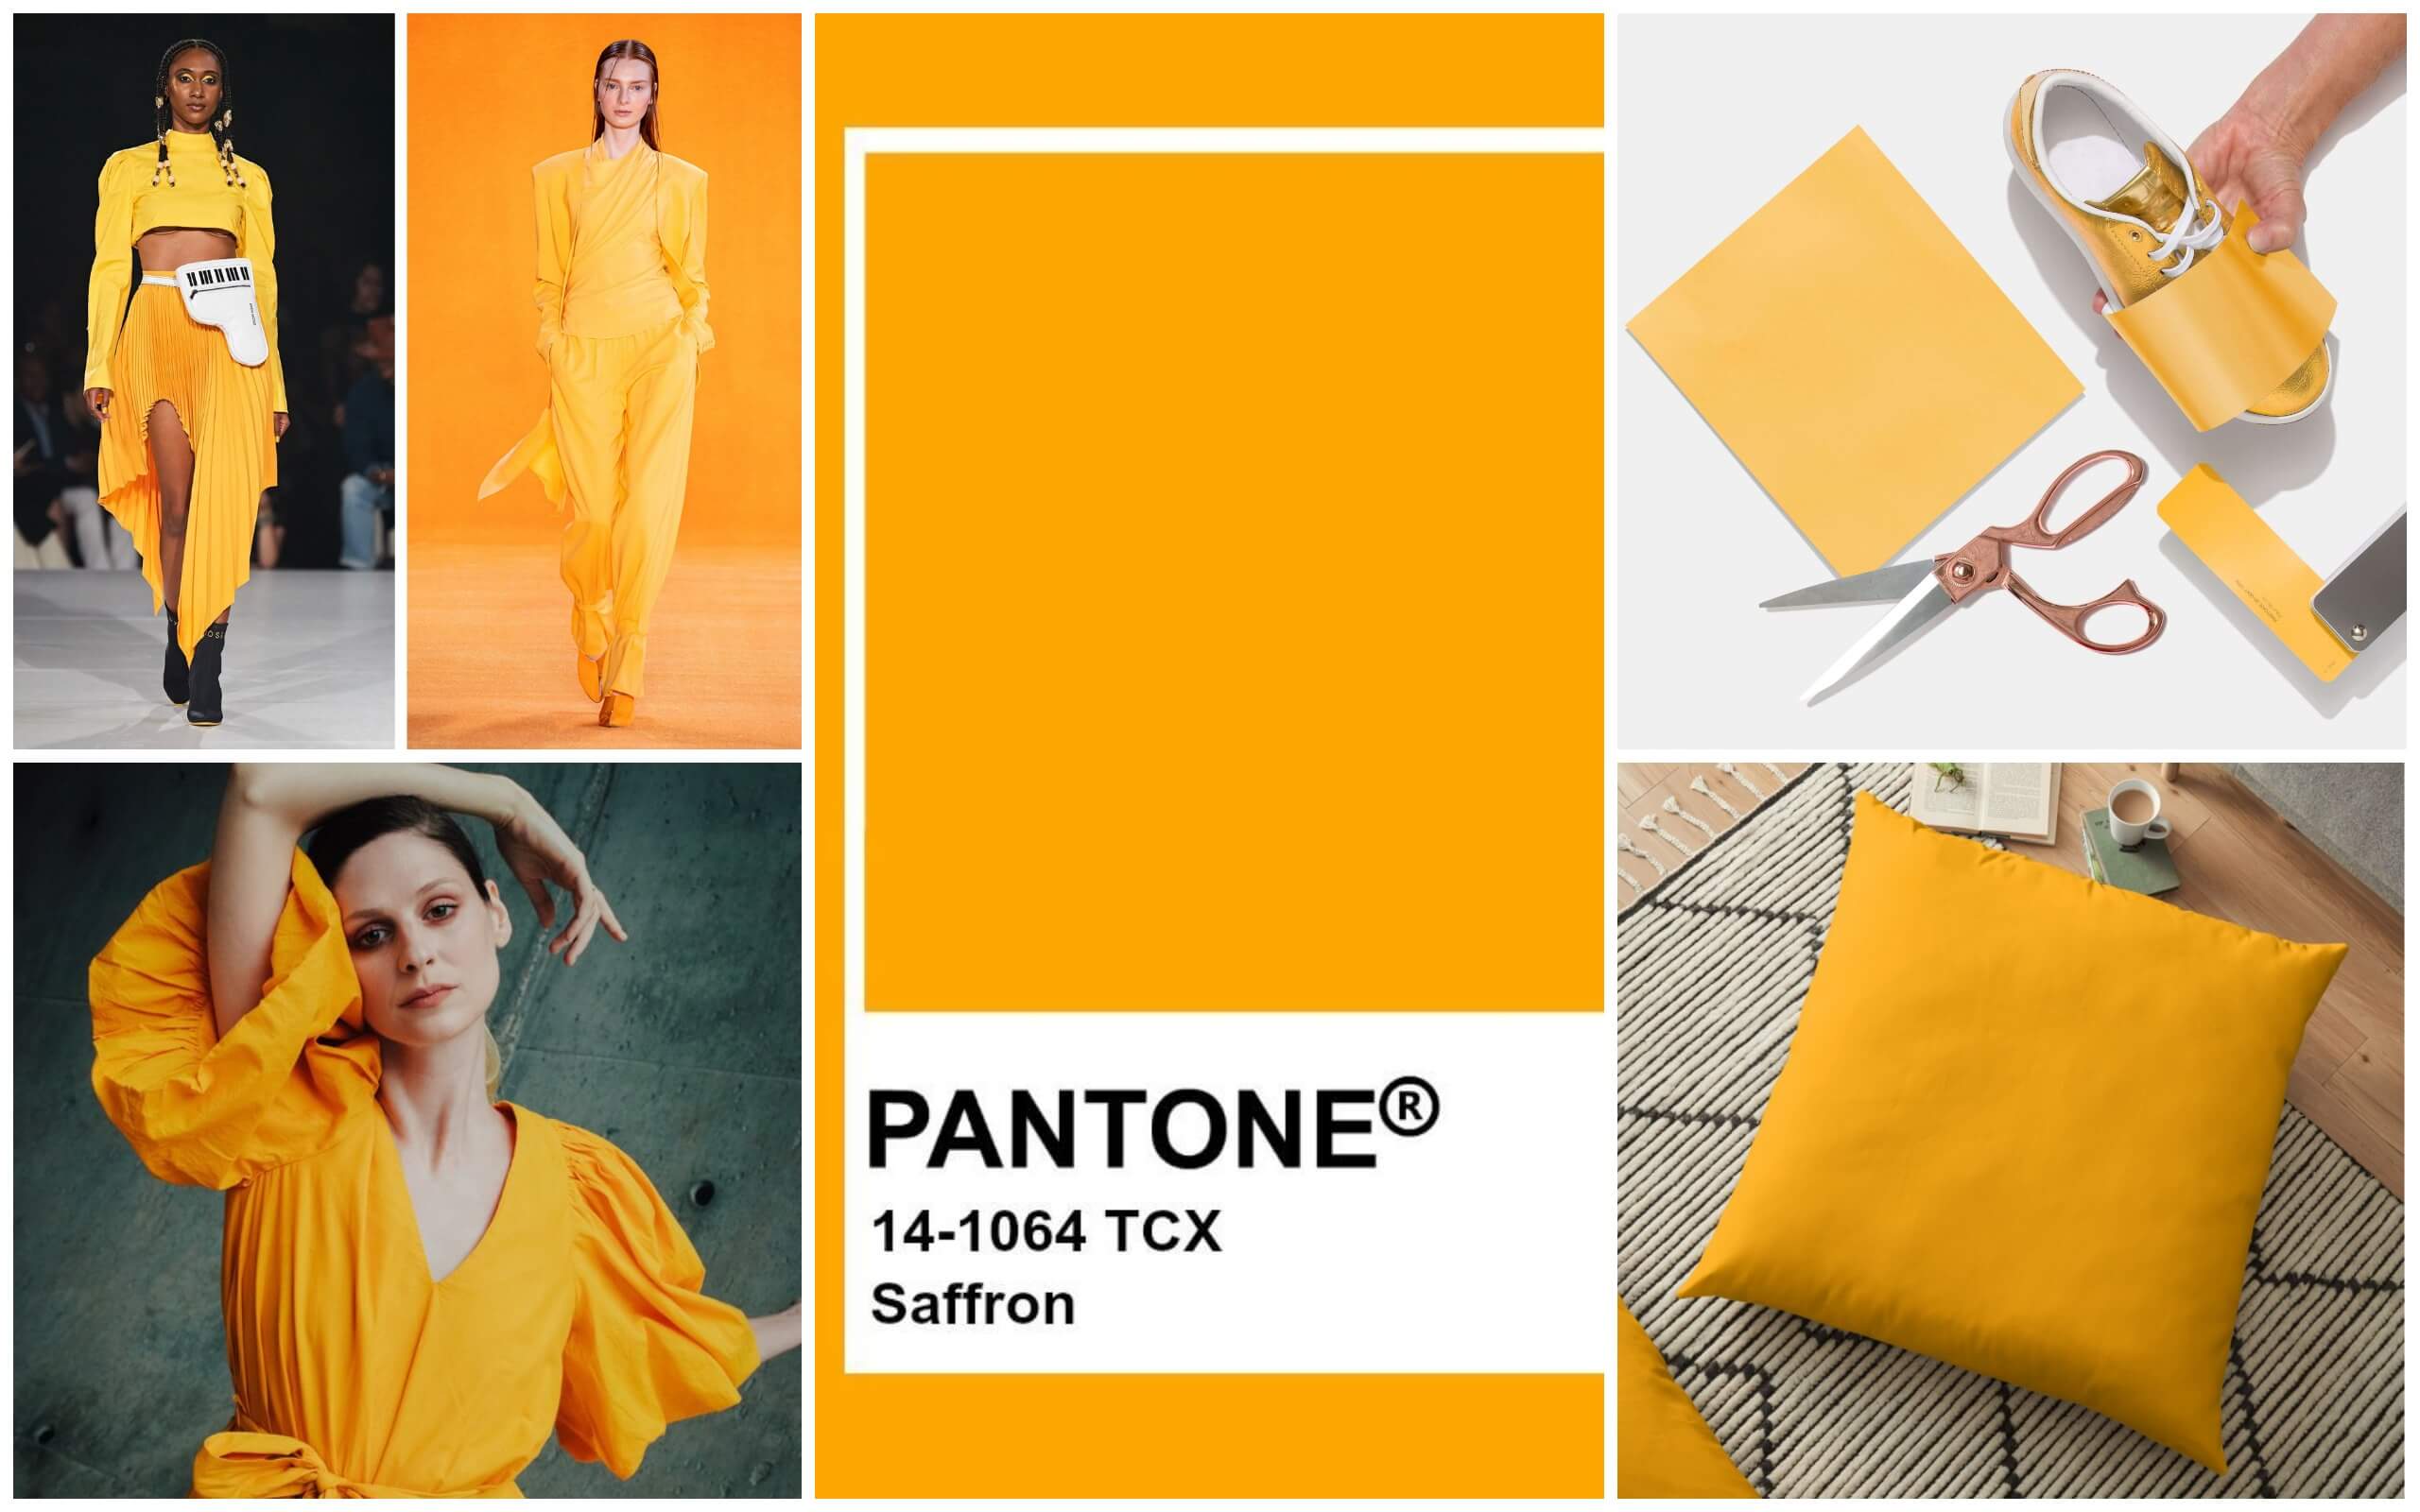 saffron pantone 2020 saffron pantone 2020 pantone.